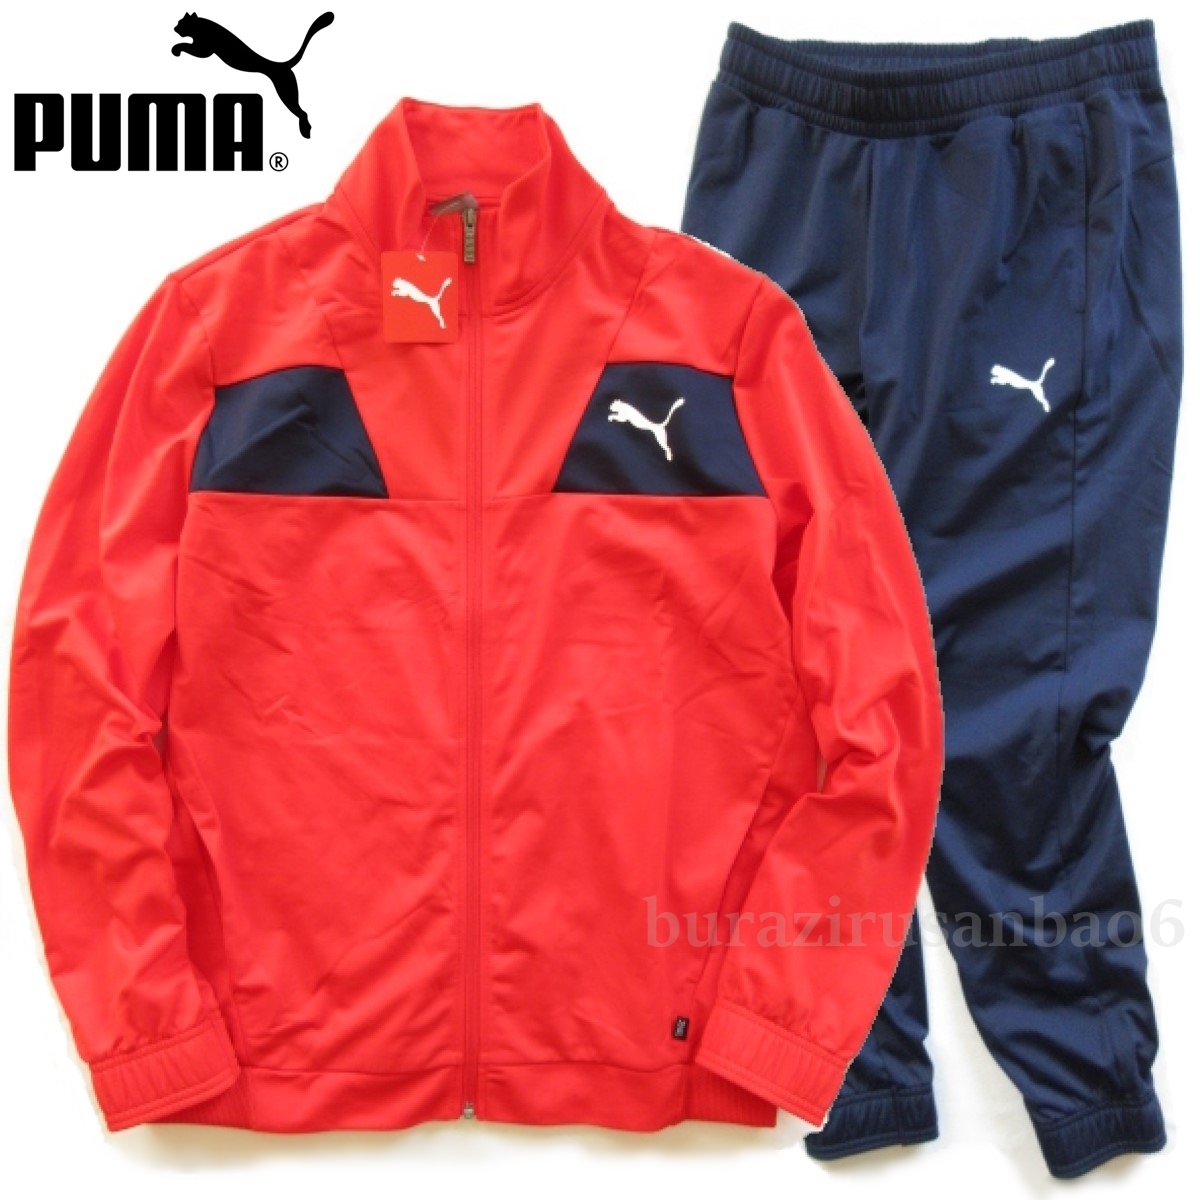 未使用◆PUMA プーマ トレーニング 上下 テックストライプ トリコットスーツ ジャージ ジャケット パンツ セットアップ メンズ US/L 日本XL_画像1